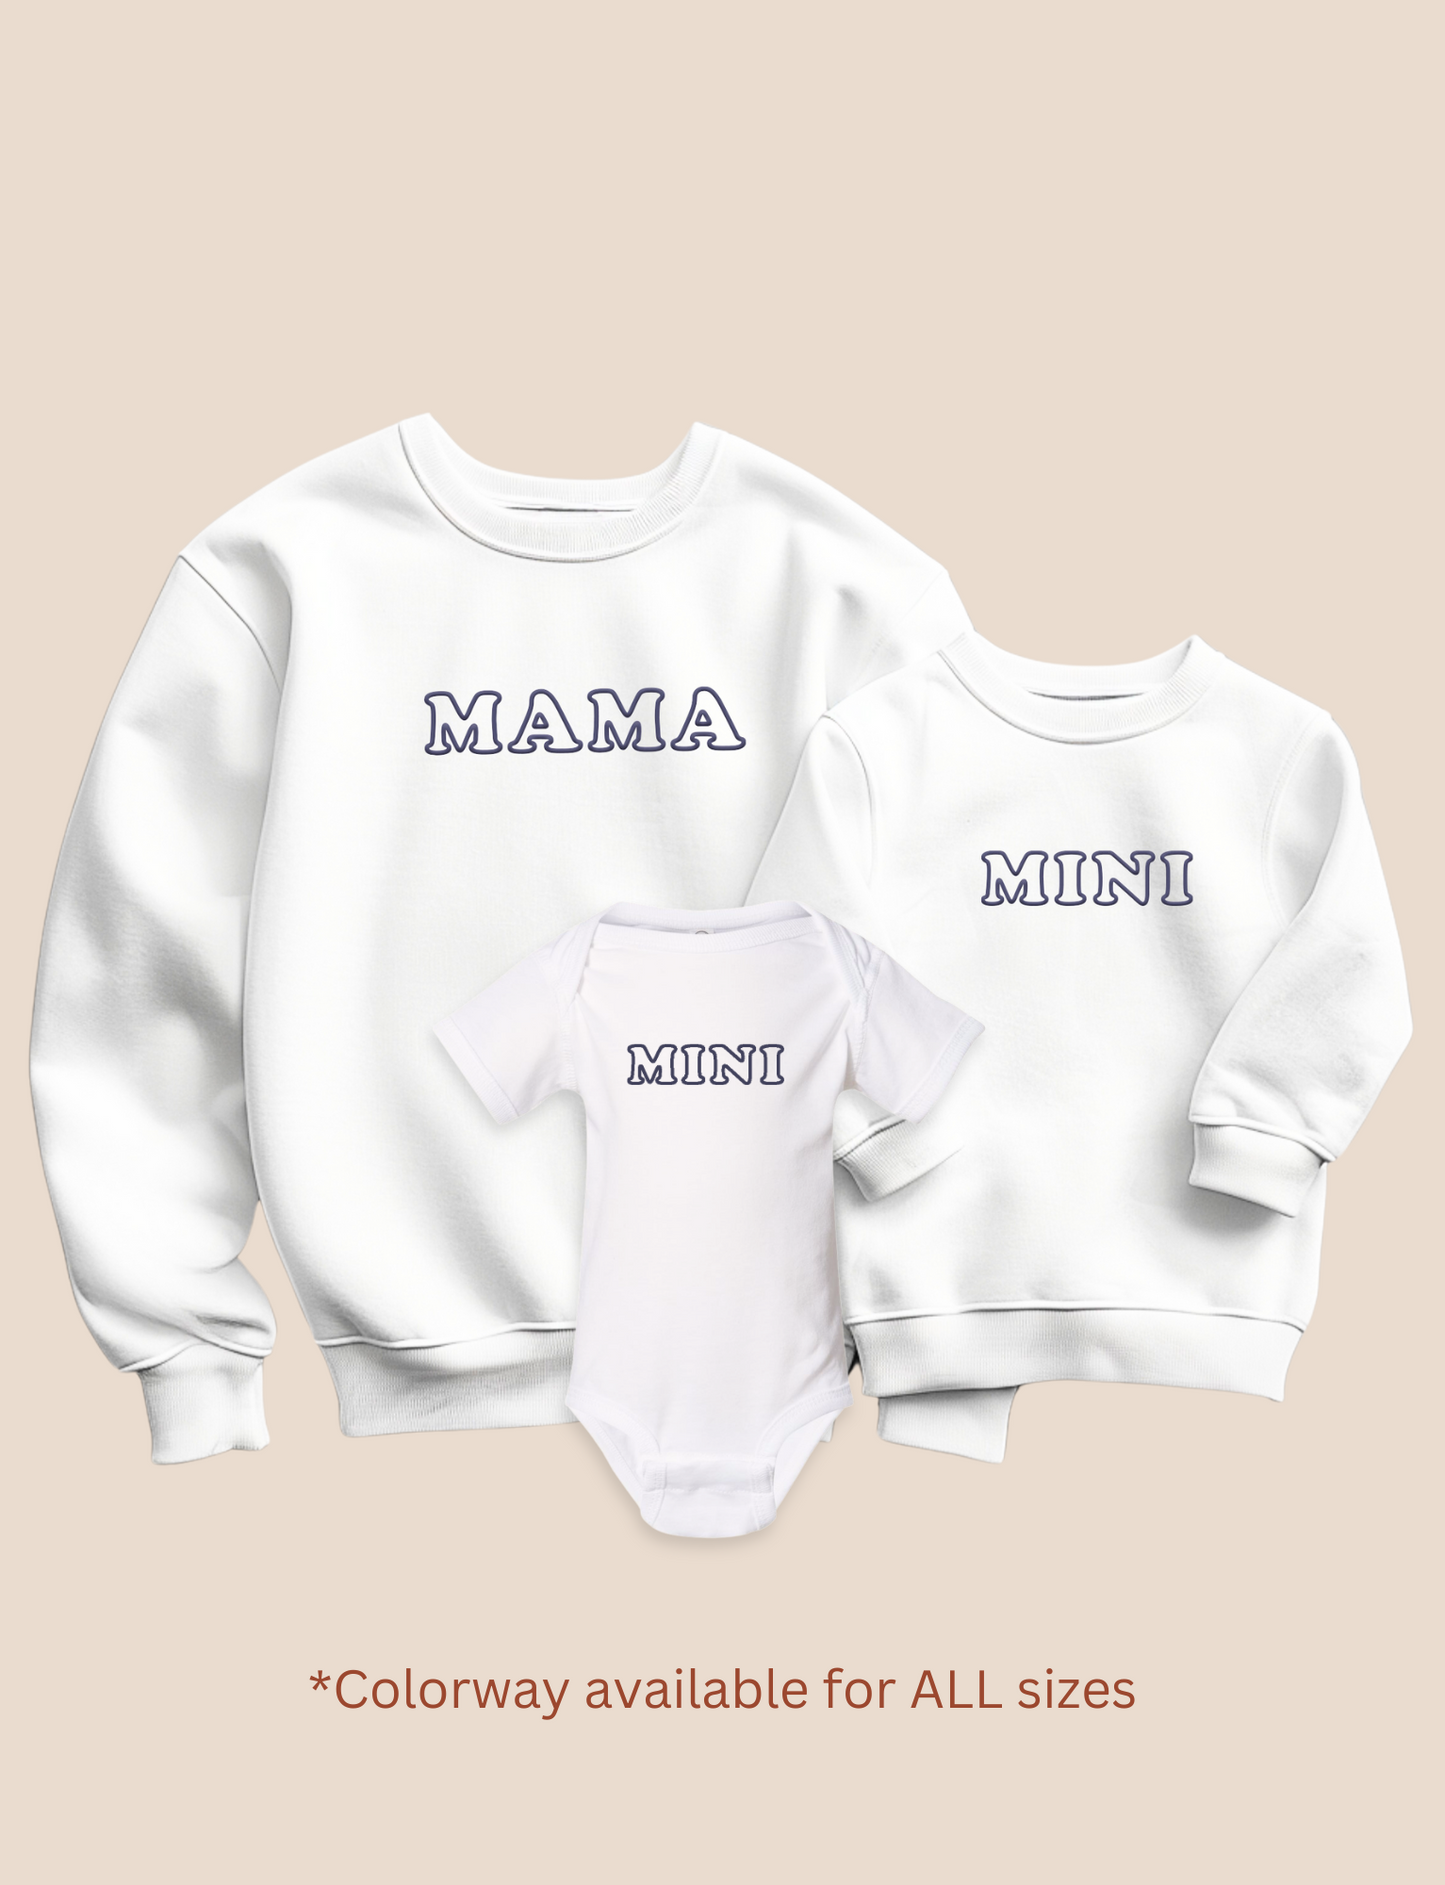 Mama and Mini Sweatshirts